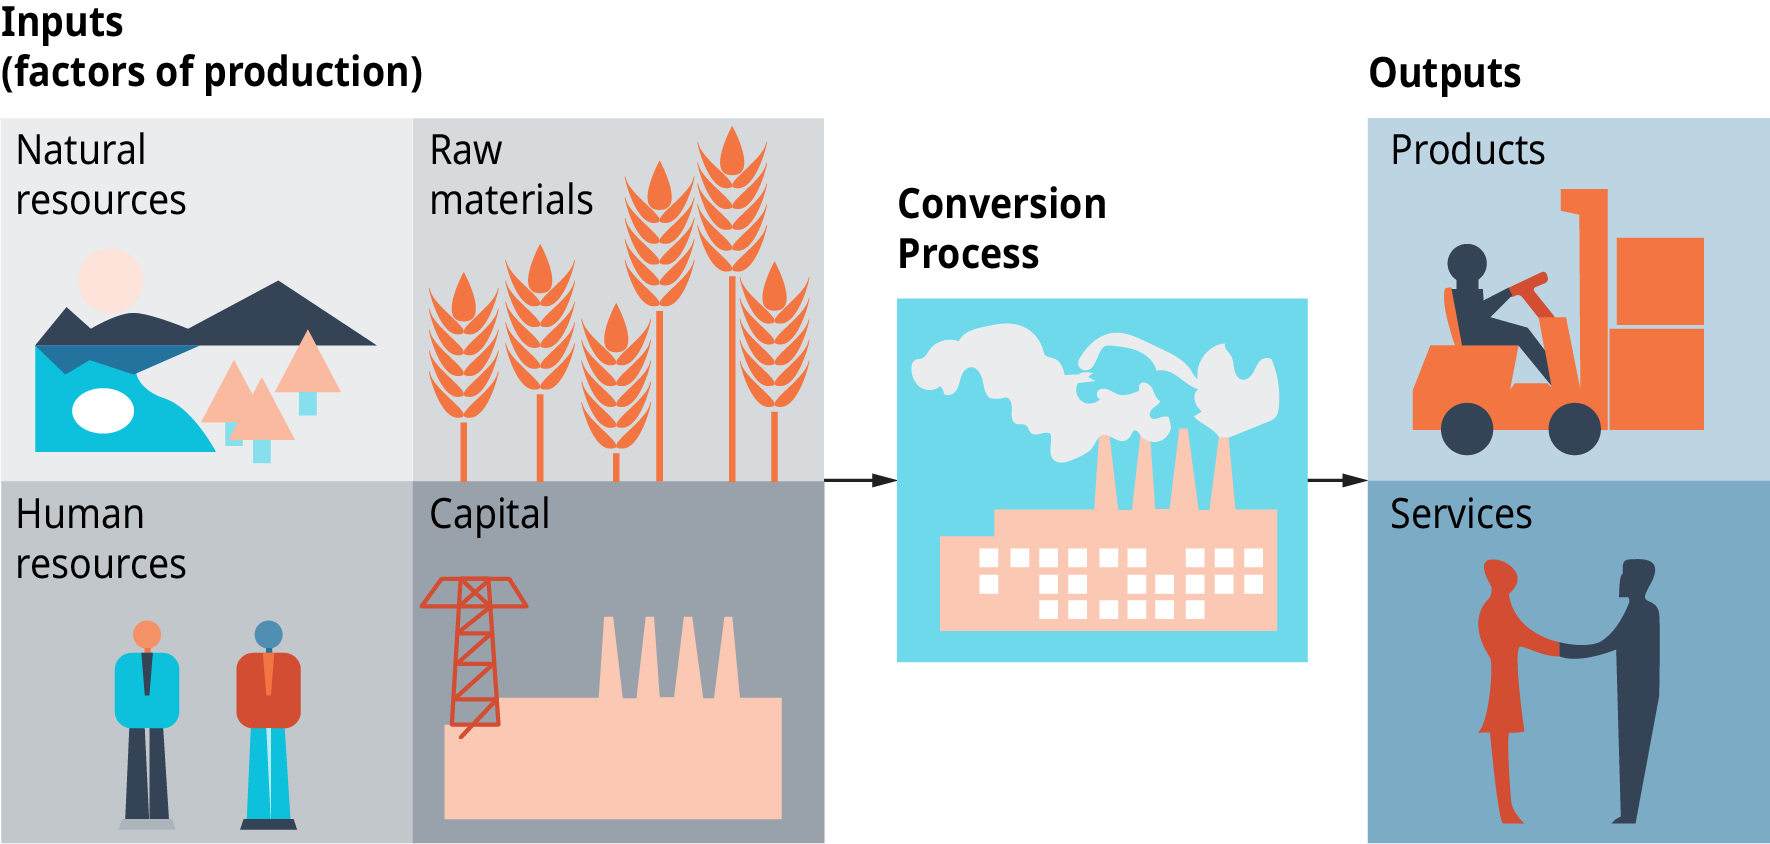 Le diagramme montre les intrants, qui sont des facteurs de production, tels que les ressources naturelles, les ressources humaines, les matières premières et le capital. Un processus de conversion a lieu et les résultats sont des produits et des services.